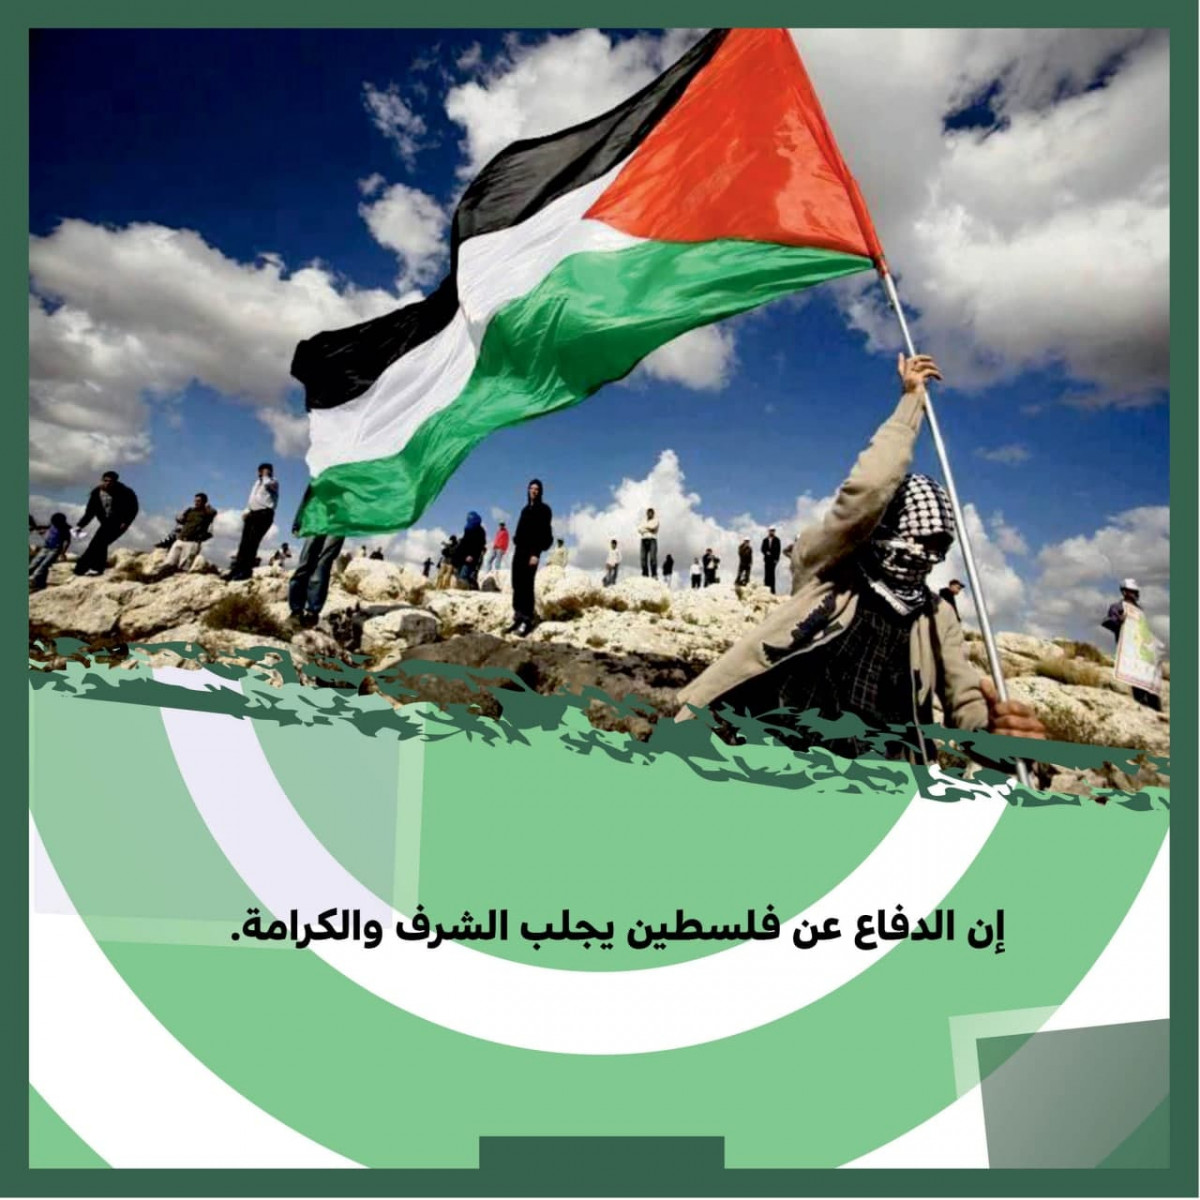 إن الدفاع عن فلسطين يجلب الشرف والكرامة